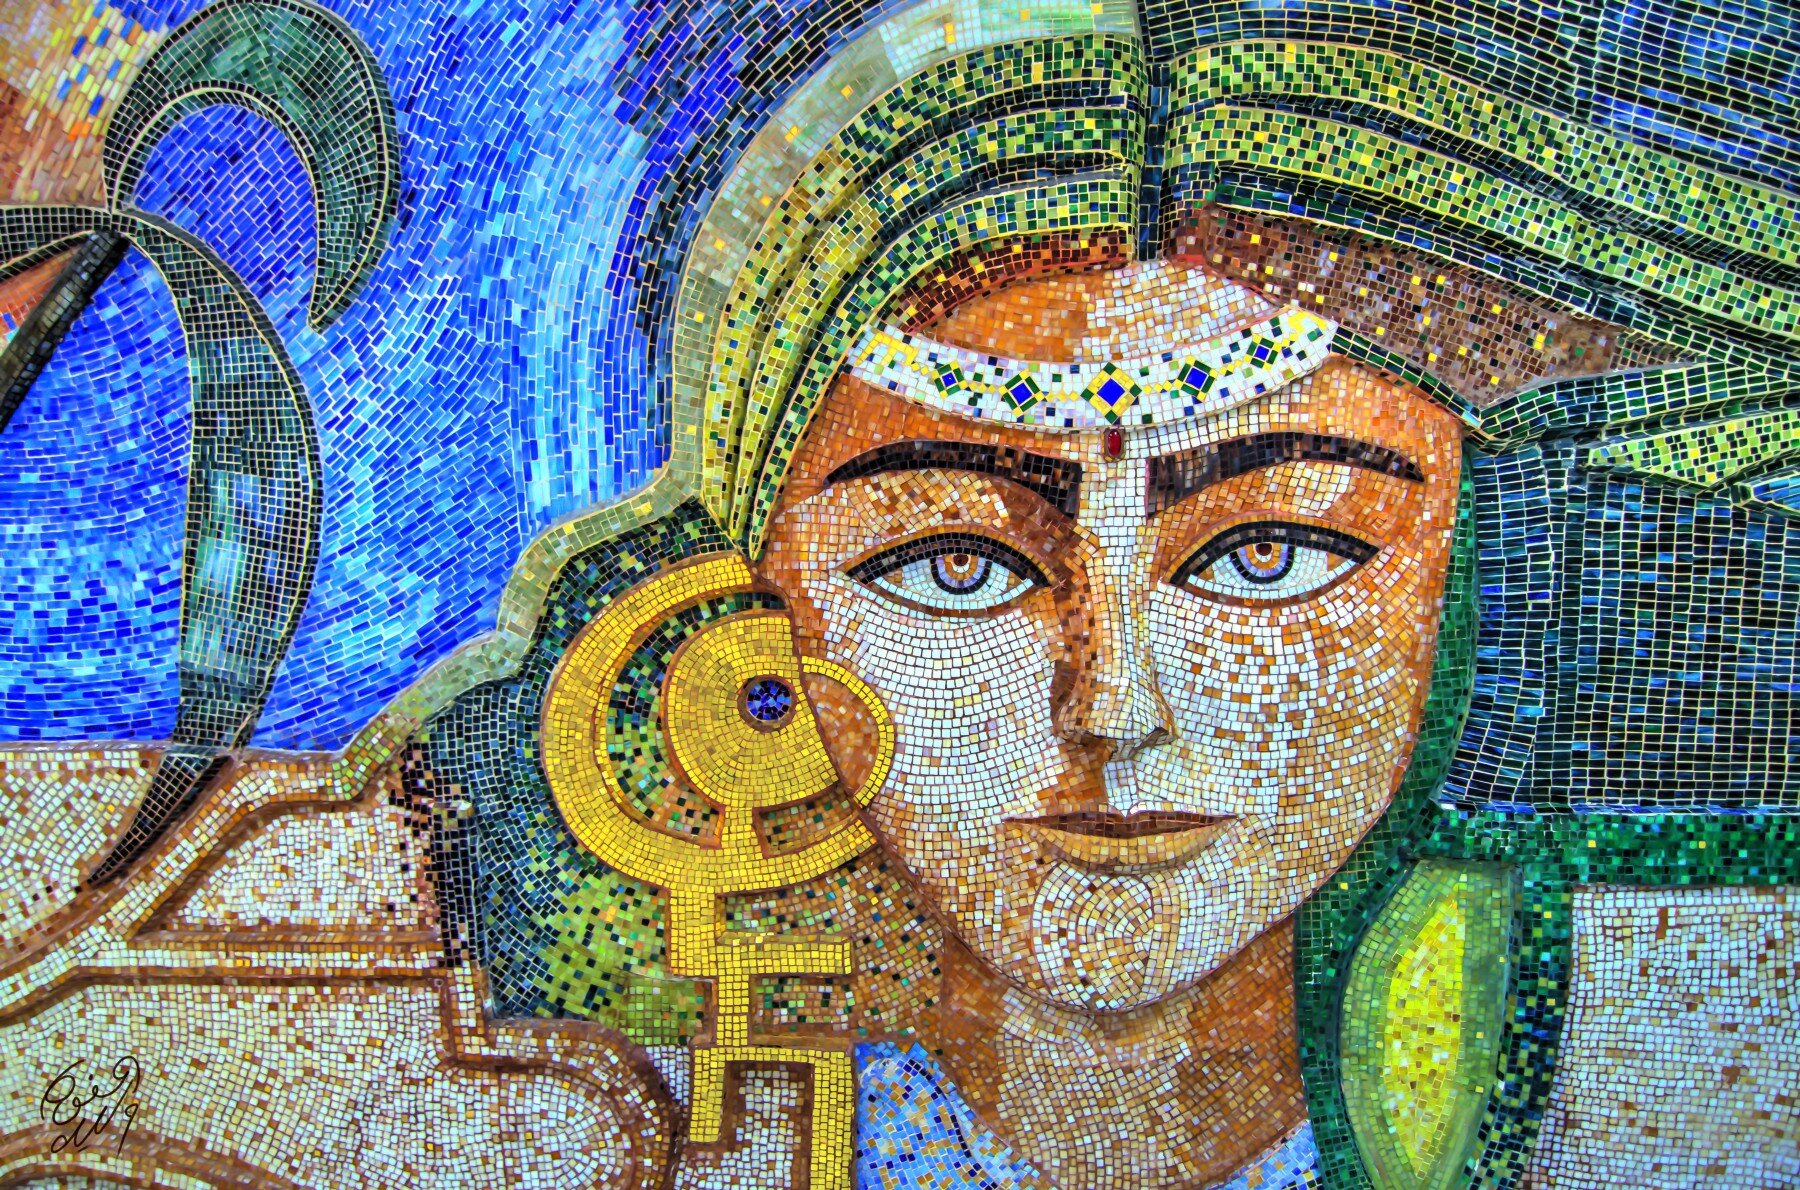 Mosaic mural photographed by Walid Mahfoudh (Flickr/Walid Mahfoudh)